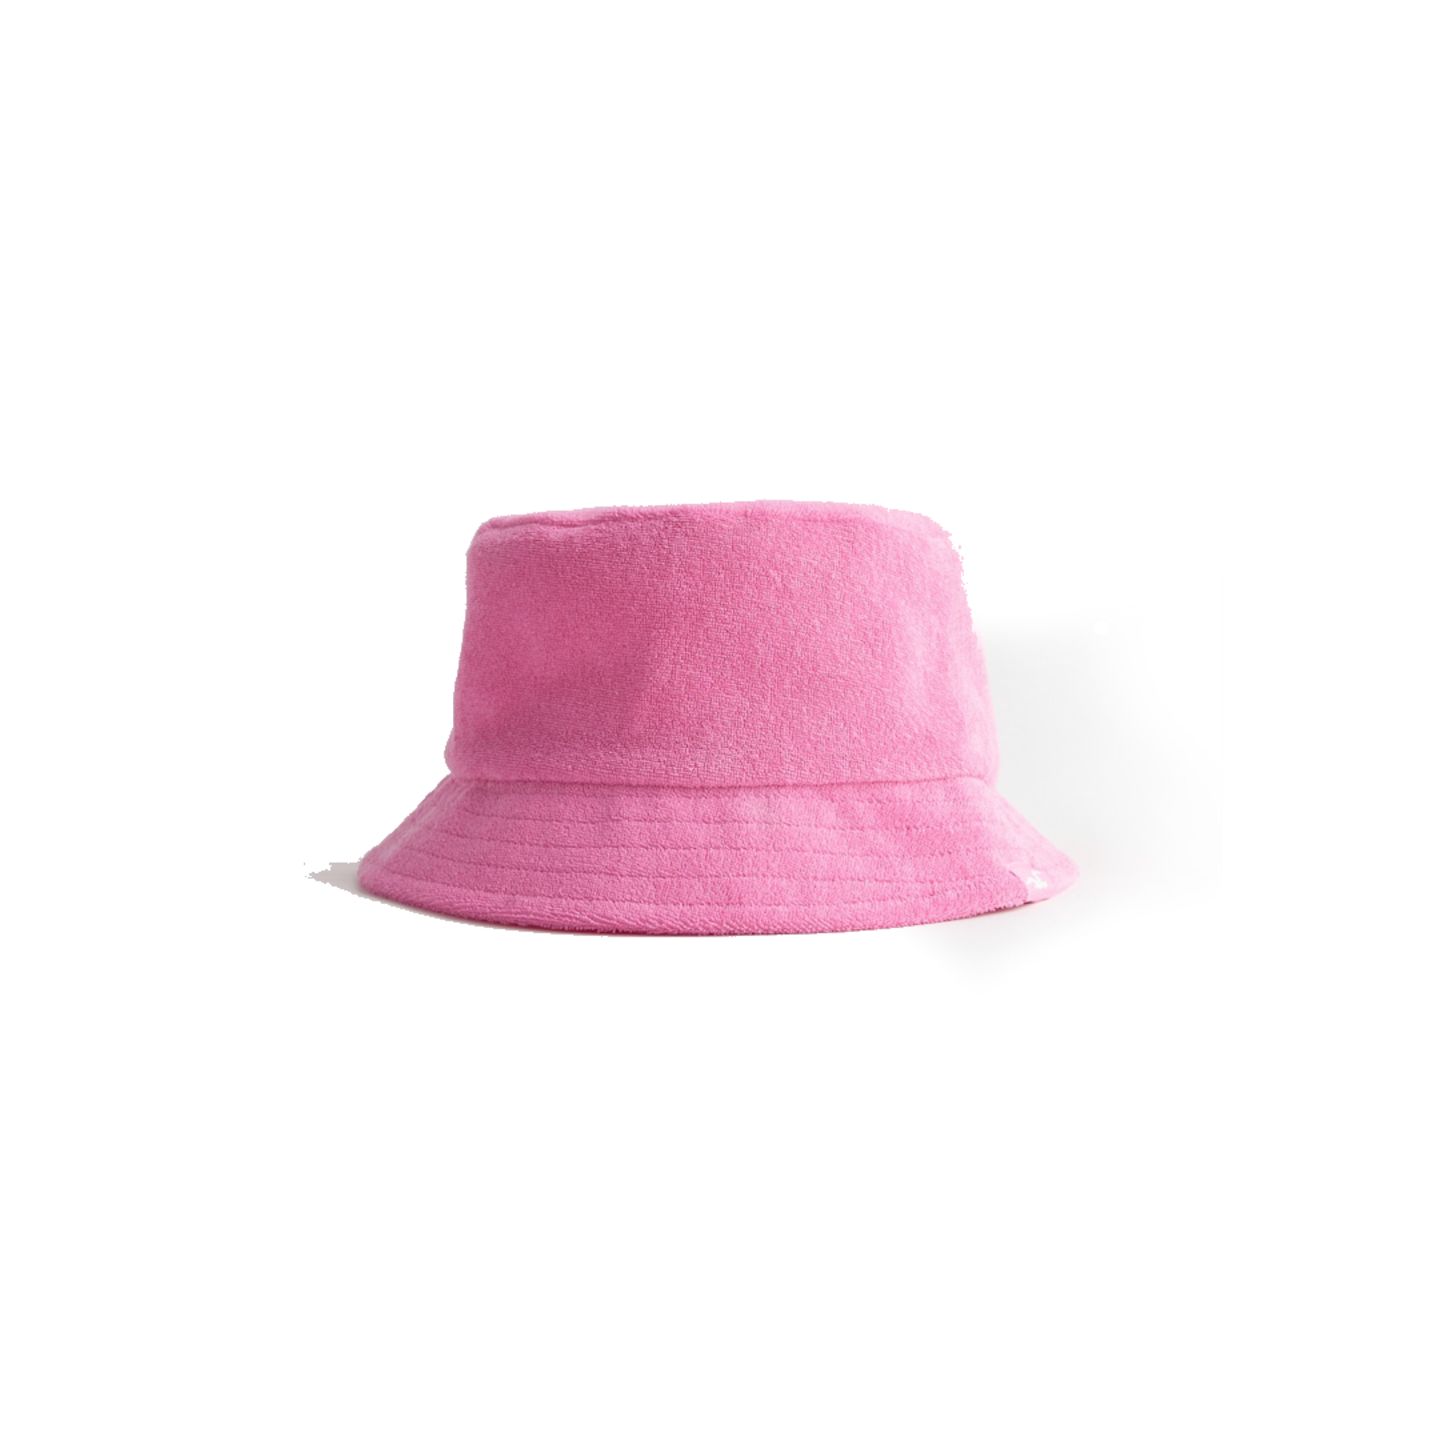 Ein Bucket Hat oder eine Mütze ist nicht nur ein schönes Accessoire zu Deinem Urlaubs-Outfit, es schützt Dich auch noch zusätzlich vor der Sonne – also unbedingt ab in die Strandtasche damit! Über Hollister, ca. 25 Euro.